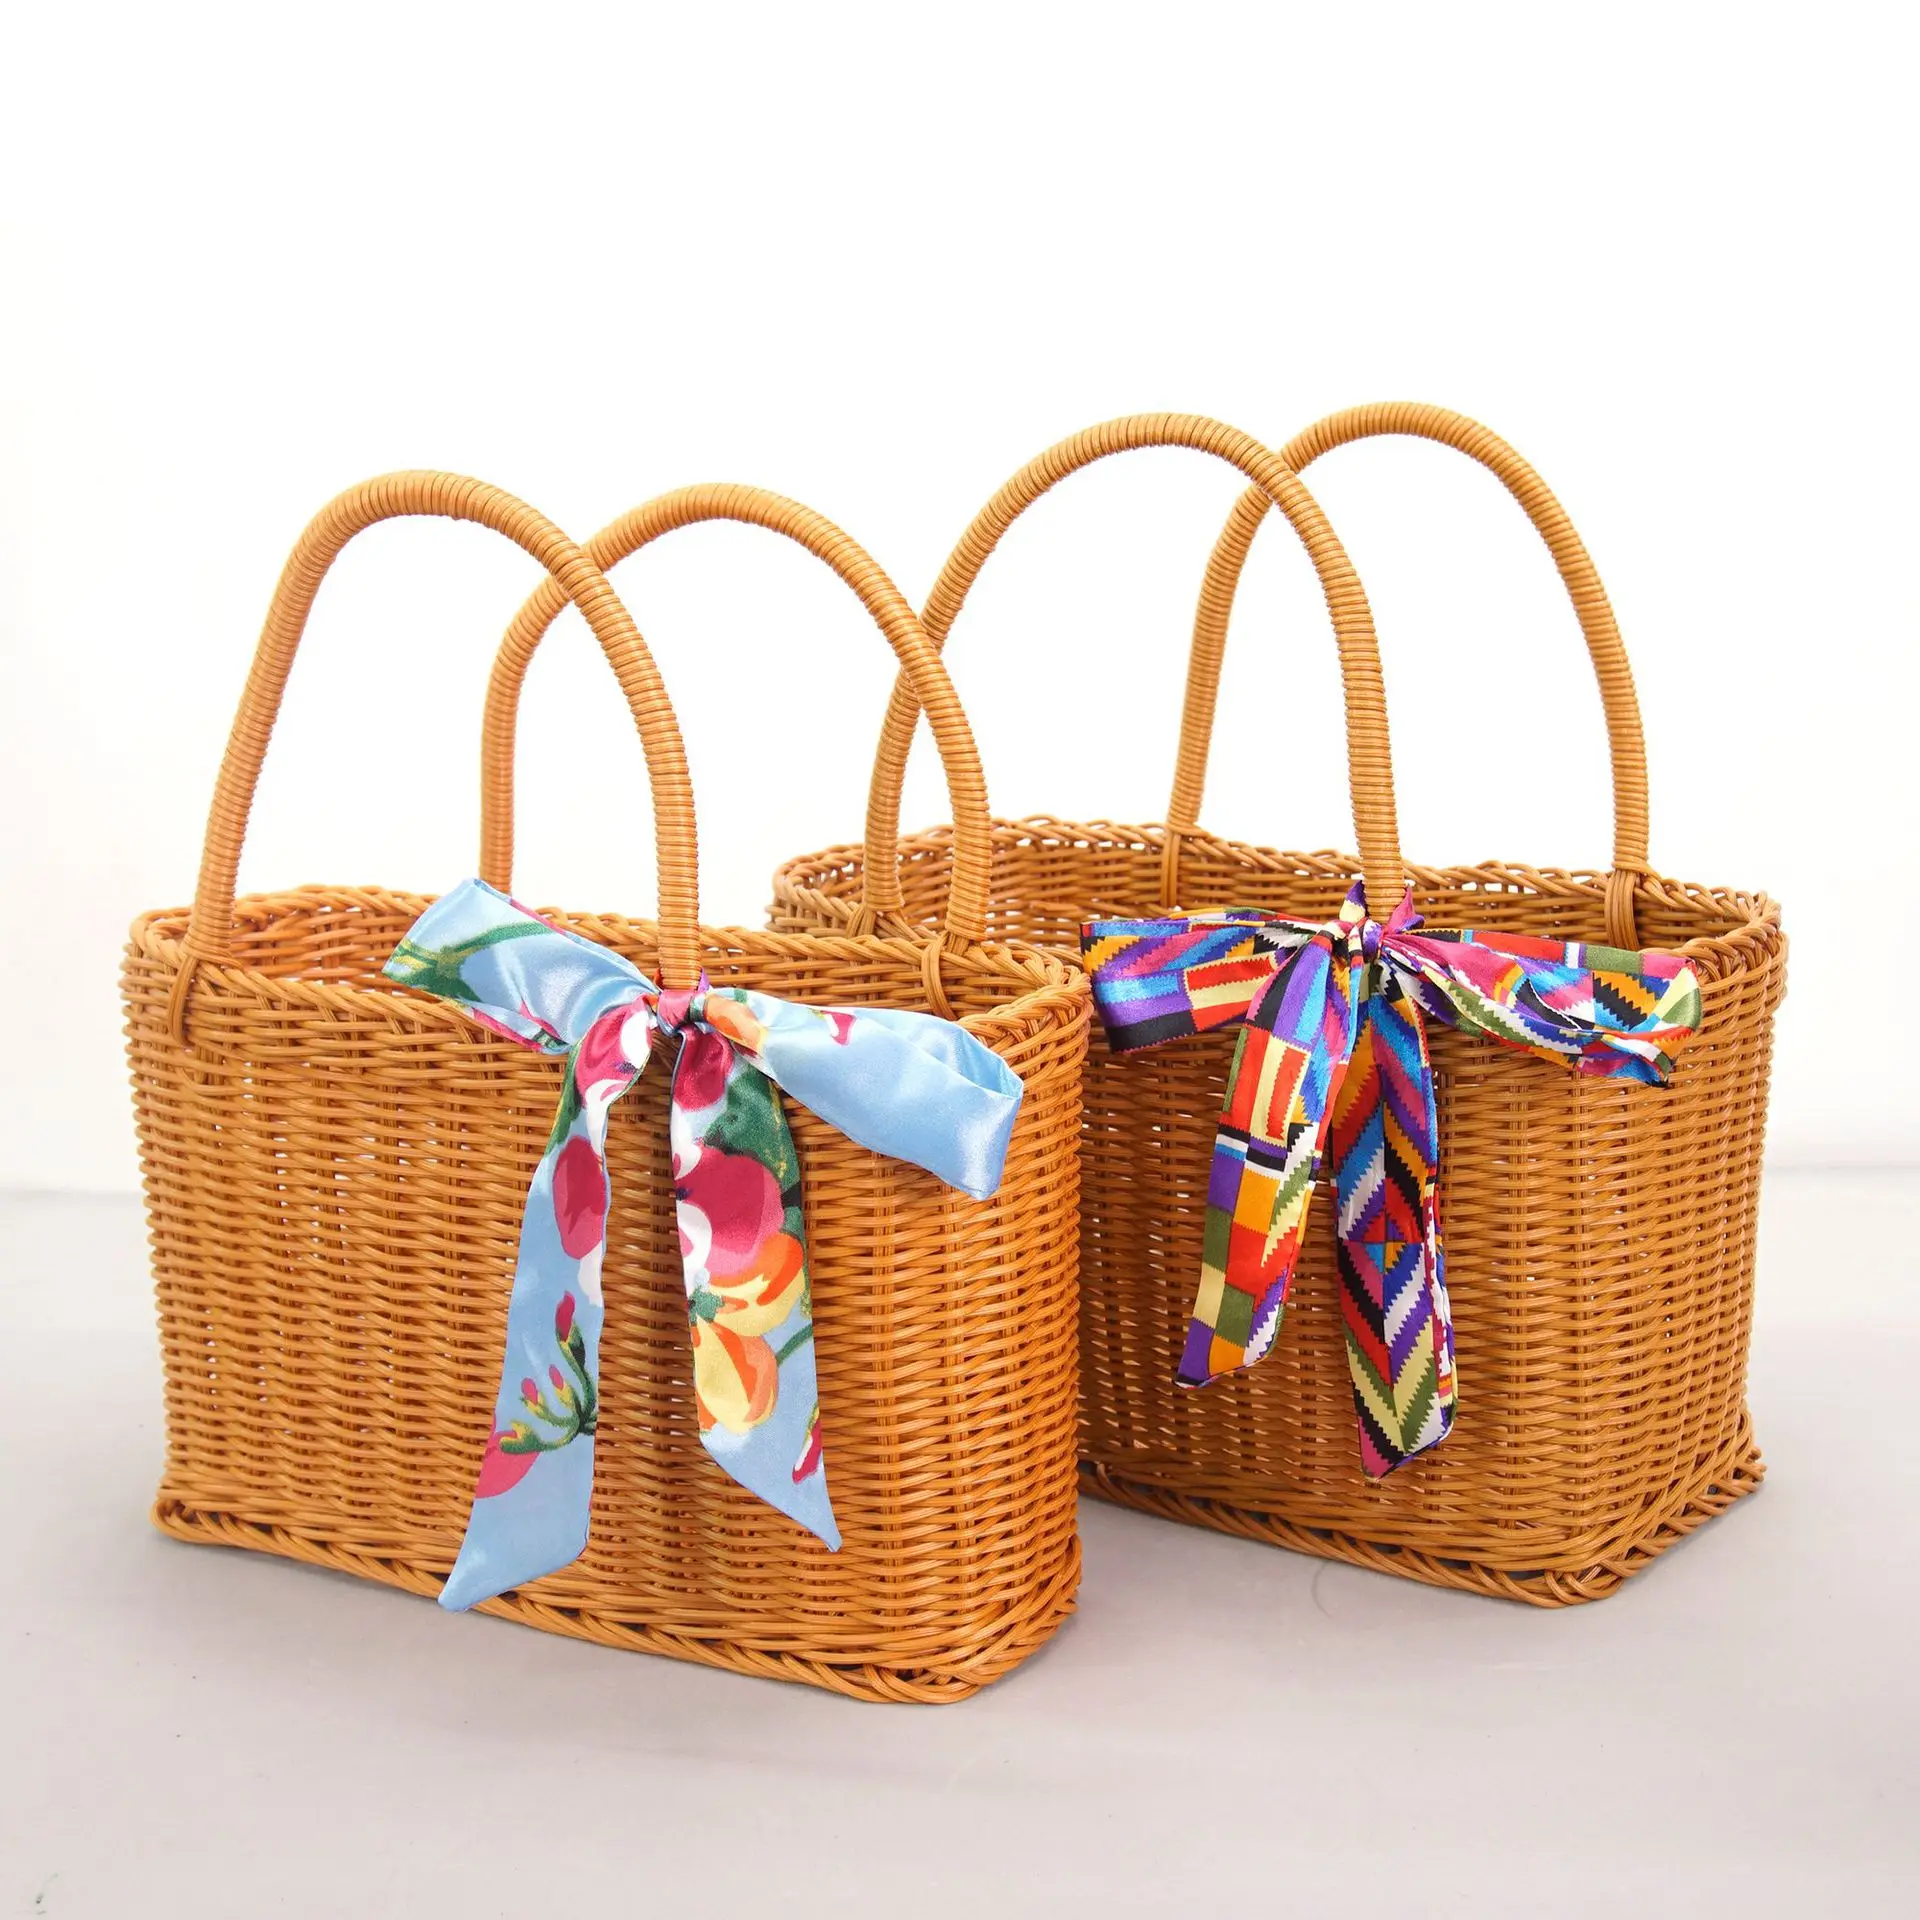 Picnic bag with basket, rattan woven portable fashion shopping basket, storage basket, rattan woven bag, idyllic style